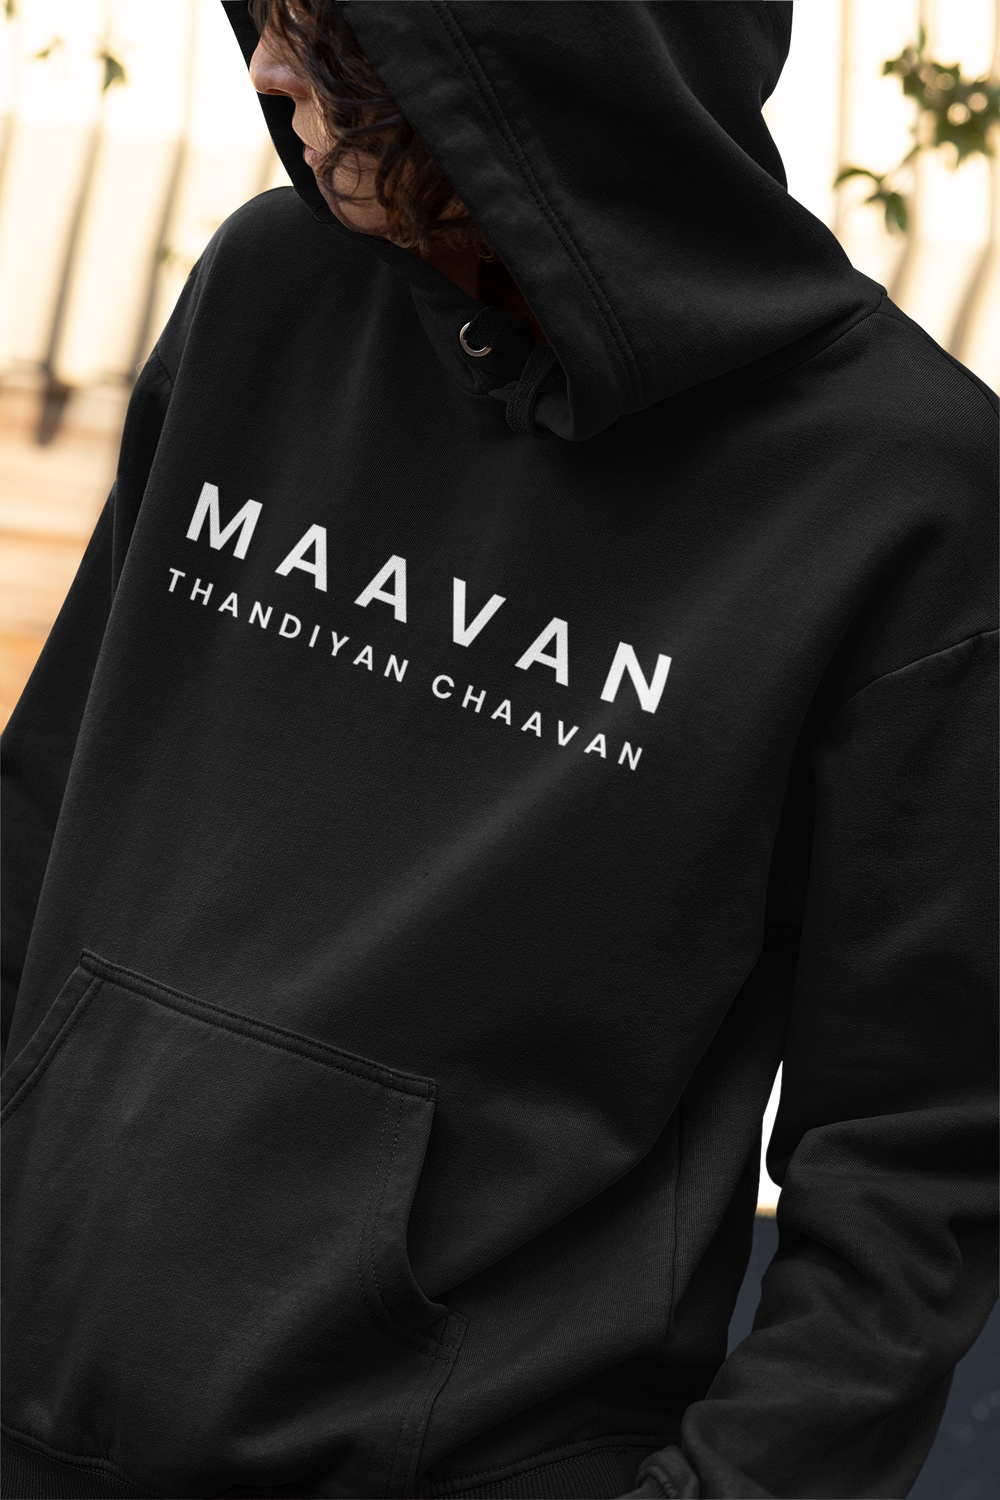 Maavan Thandiyan Chaavan Unisex Hoodie - Various Colours